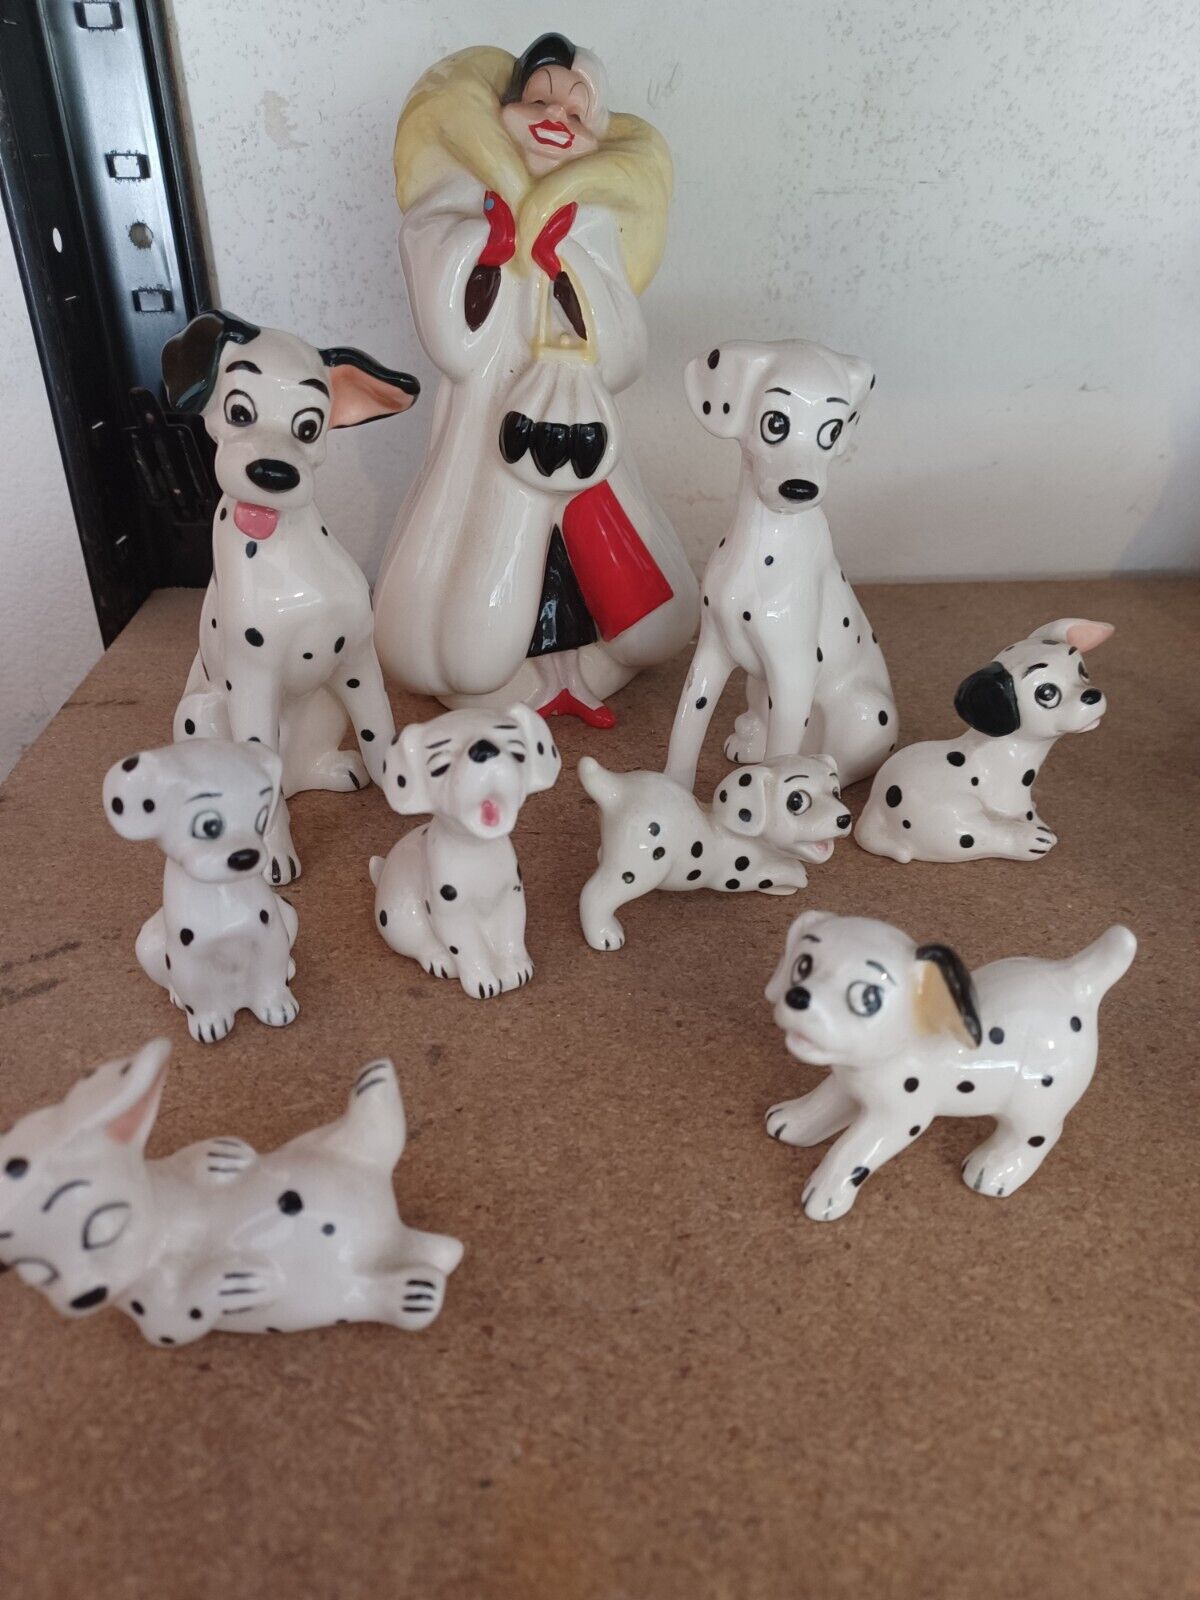 LOT Vintage Cruella DeVil Disney Dalmatians Ceramic Figurines Dalmatian Dog-9 